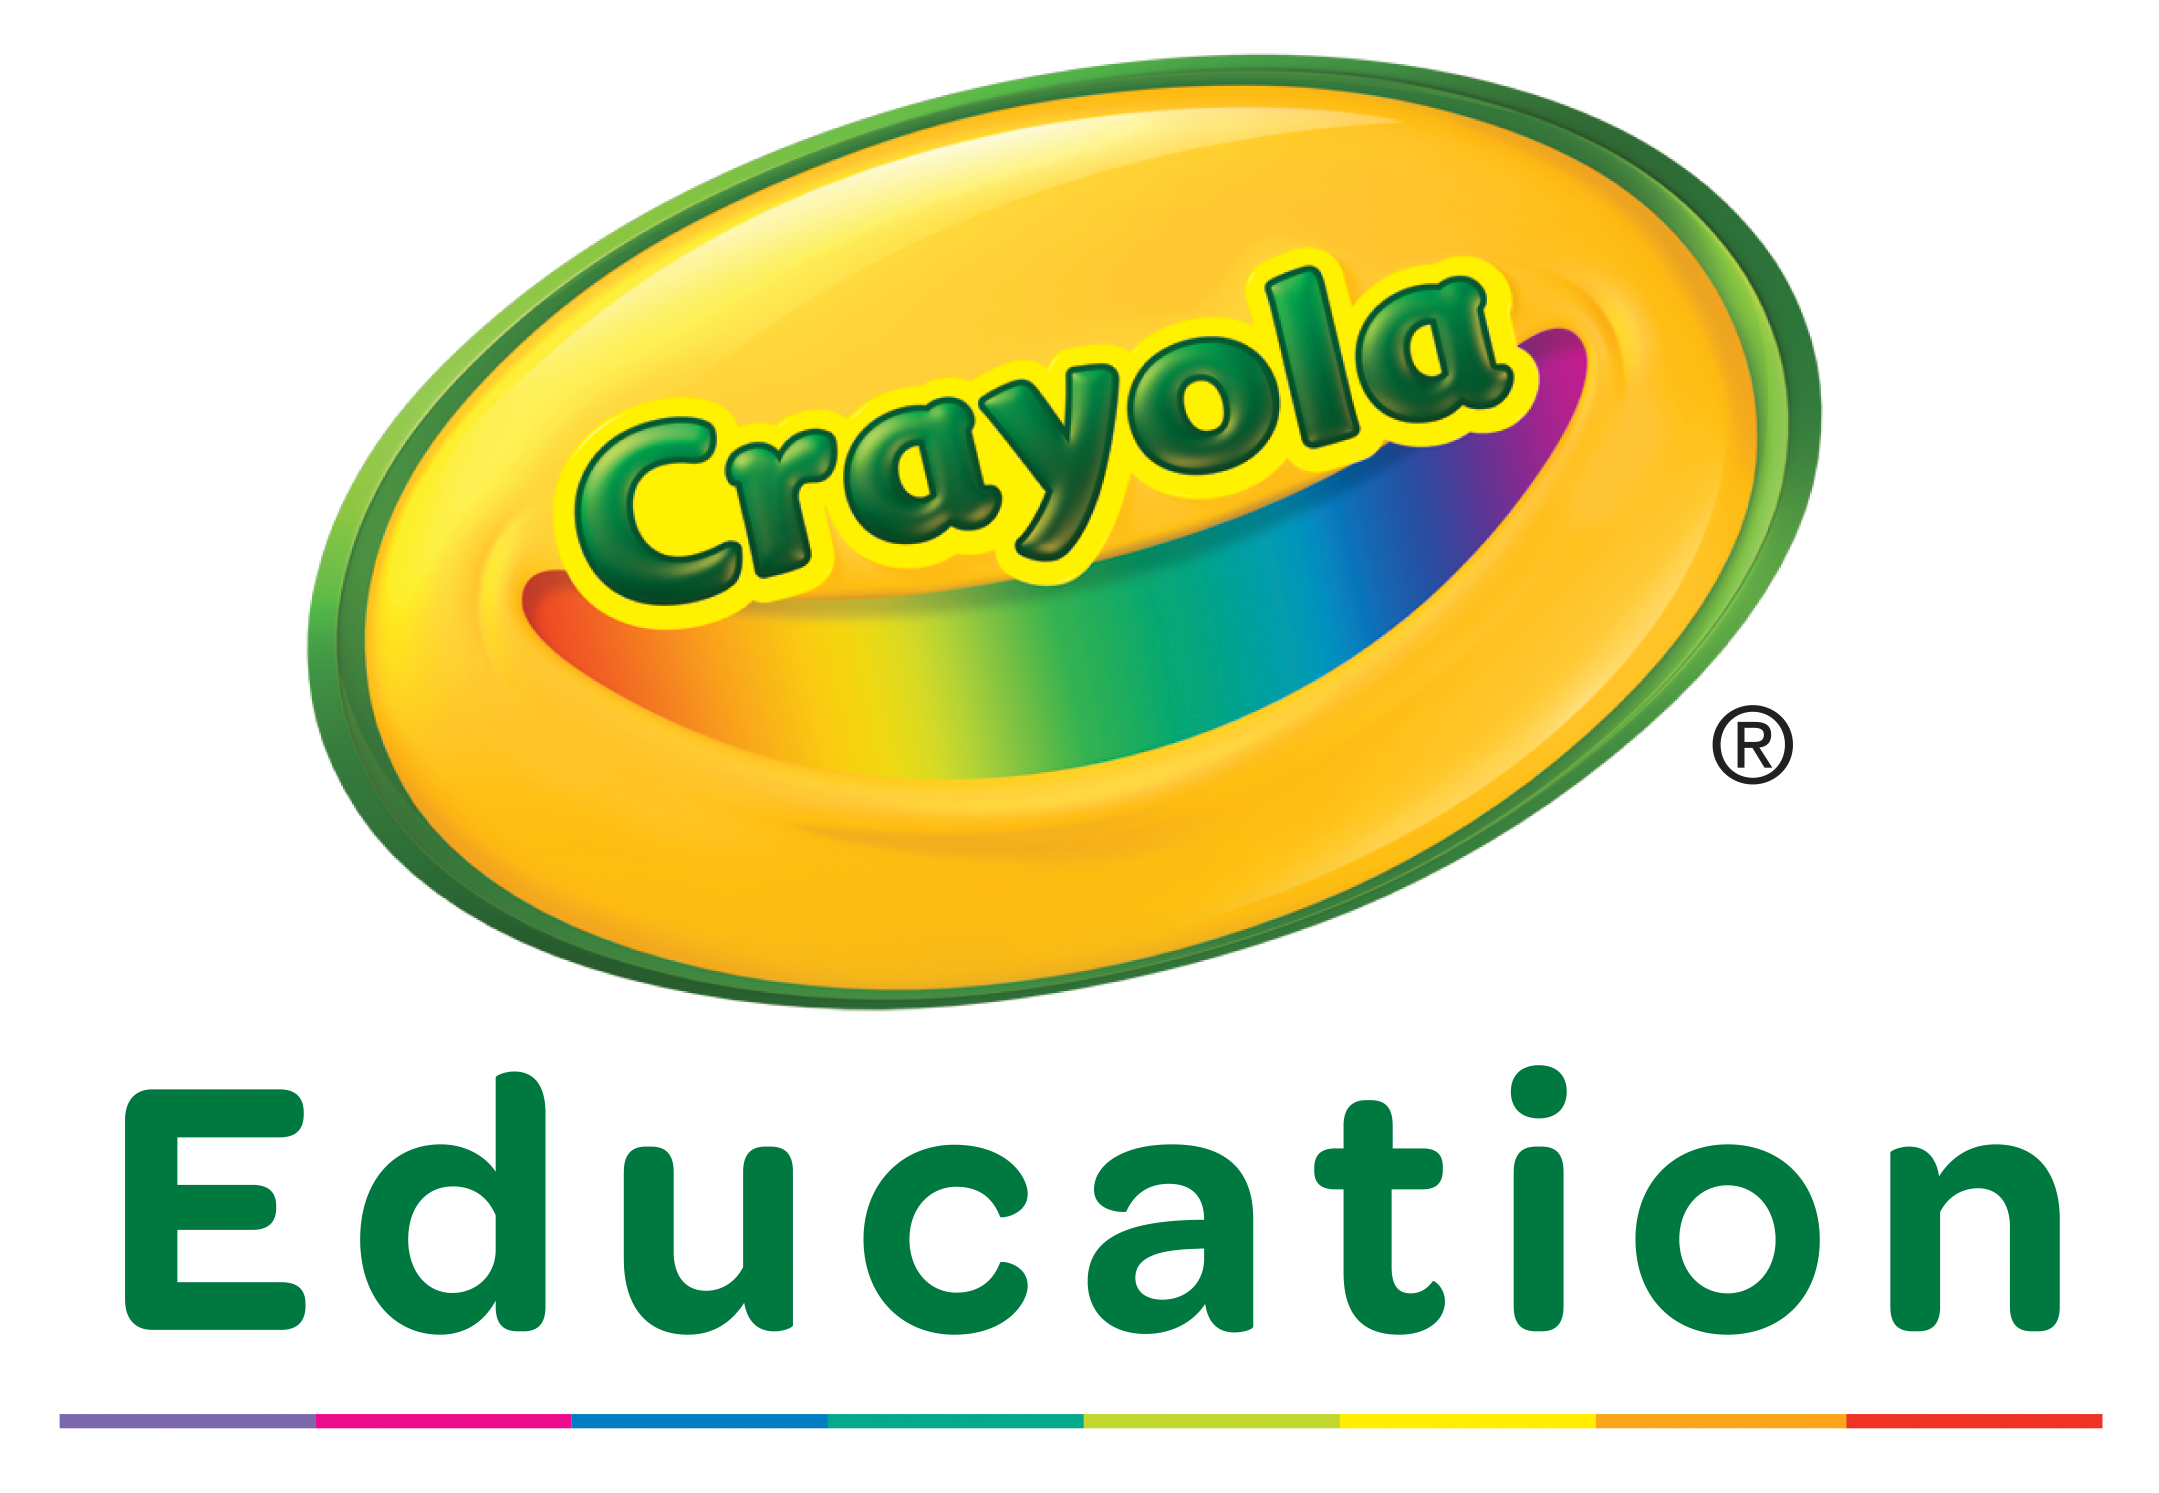 Crayola Education logo